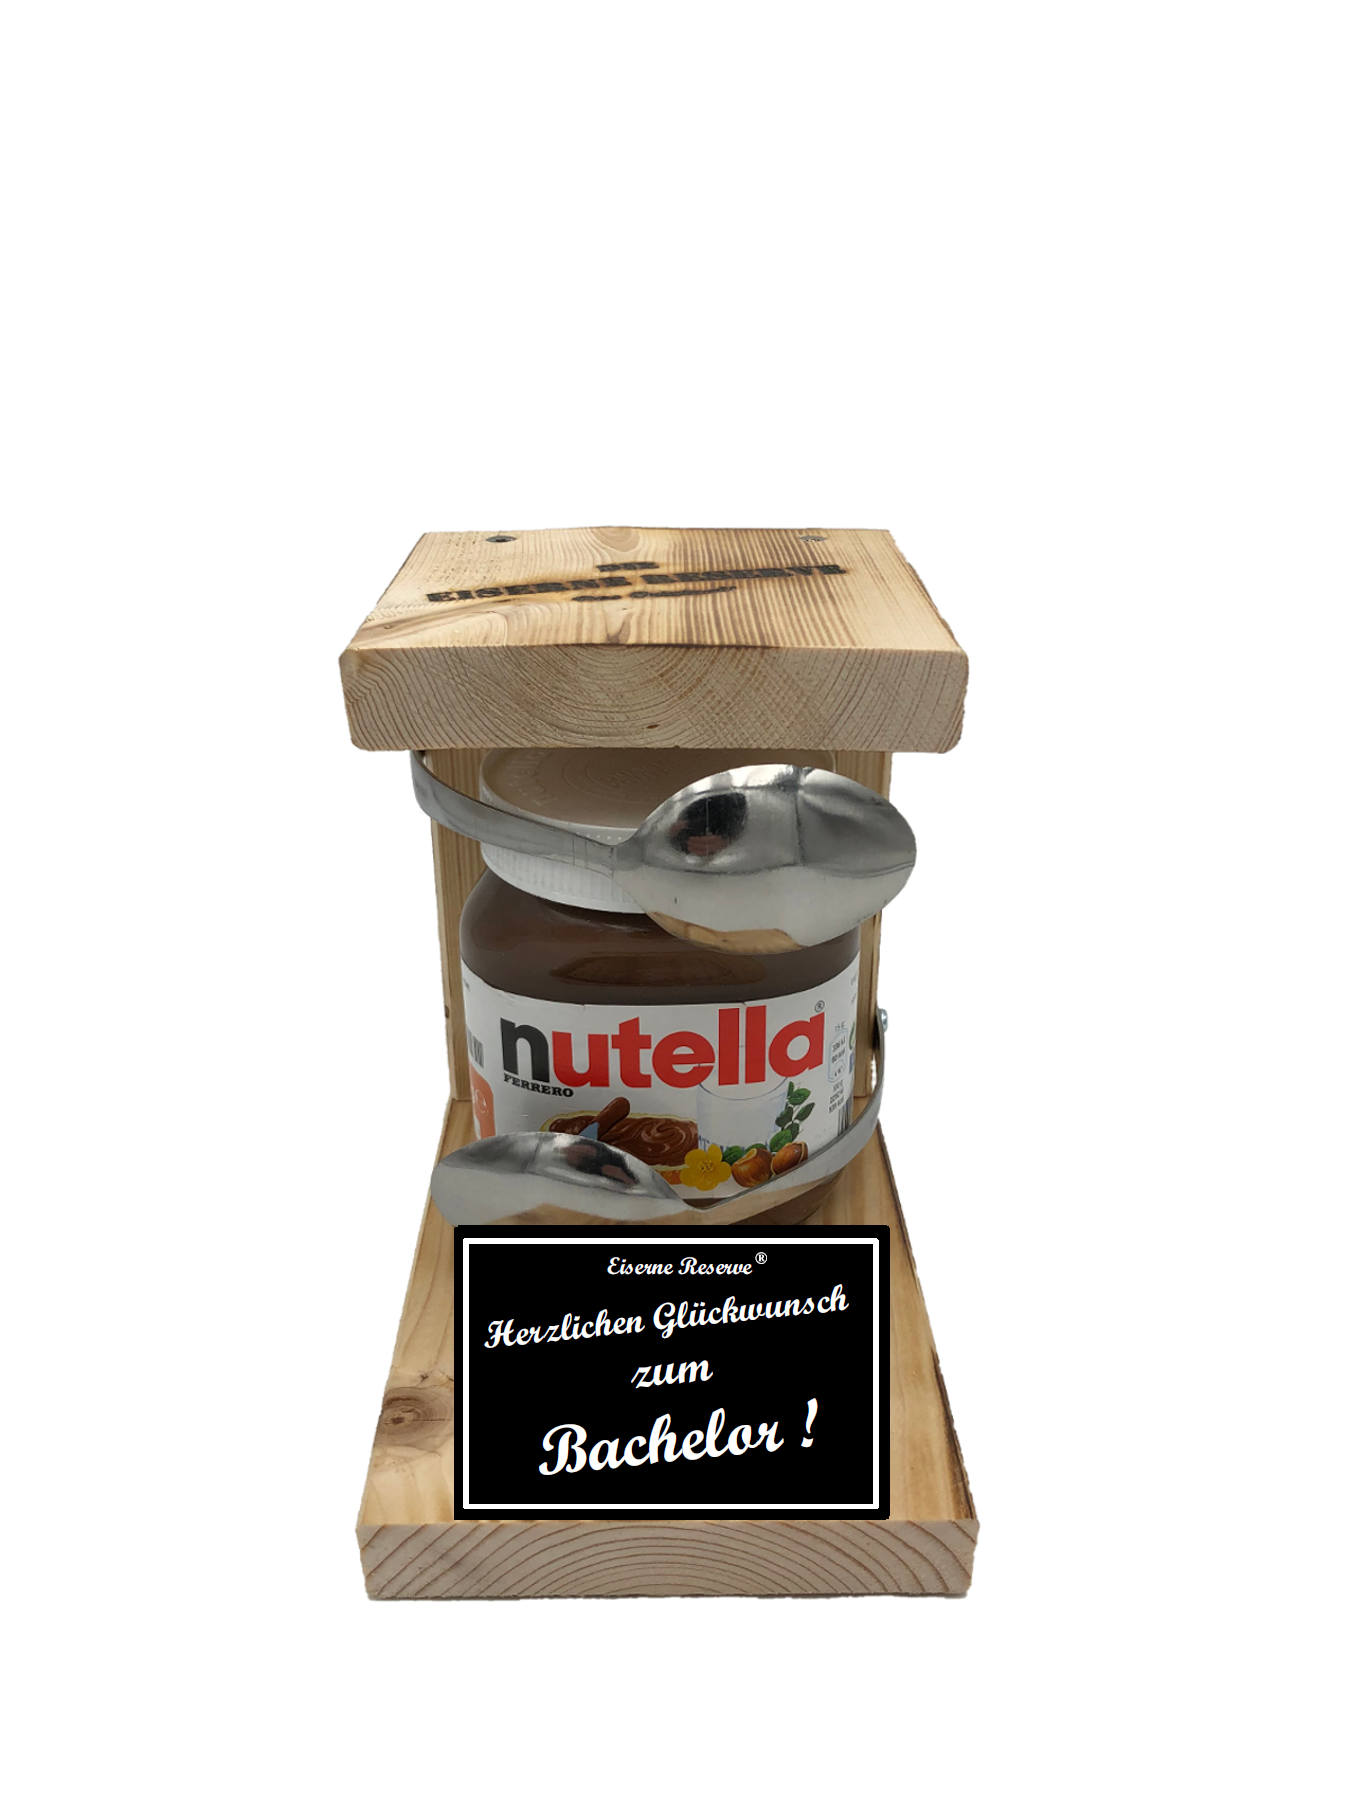 Herzlichen Glückwunsch zum Bachelor Löffel Nutella Geschenk - Die Nutella Geschenkidee